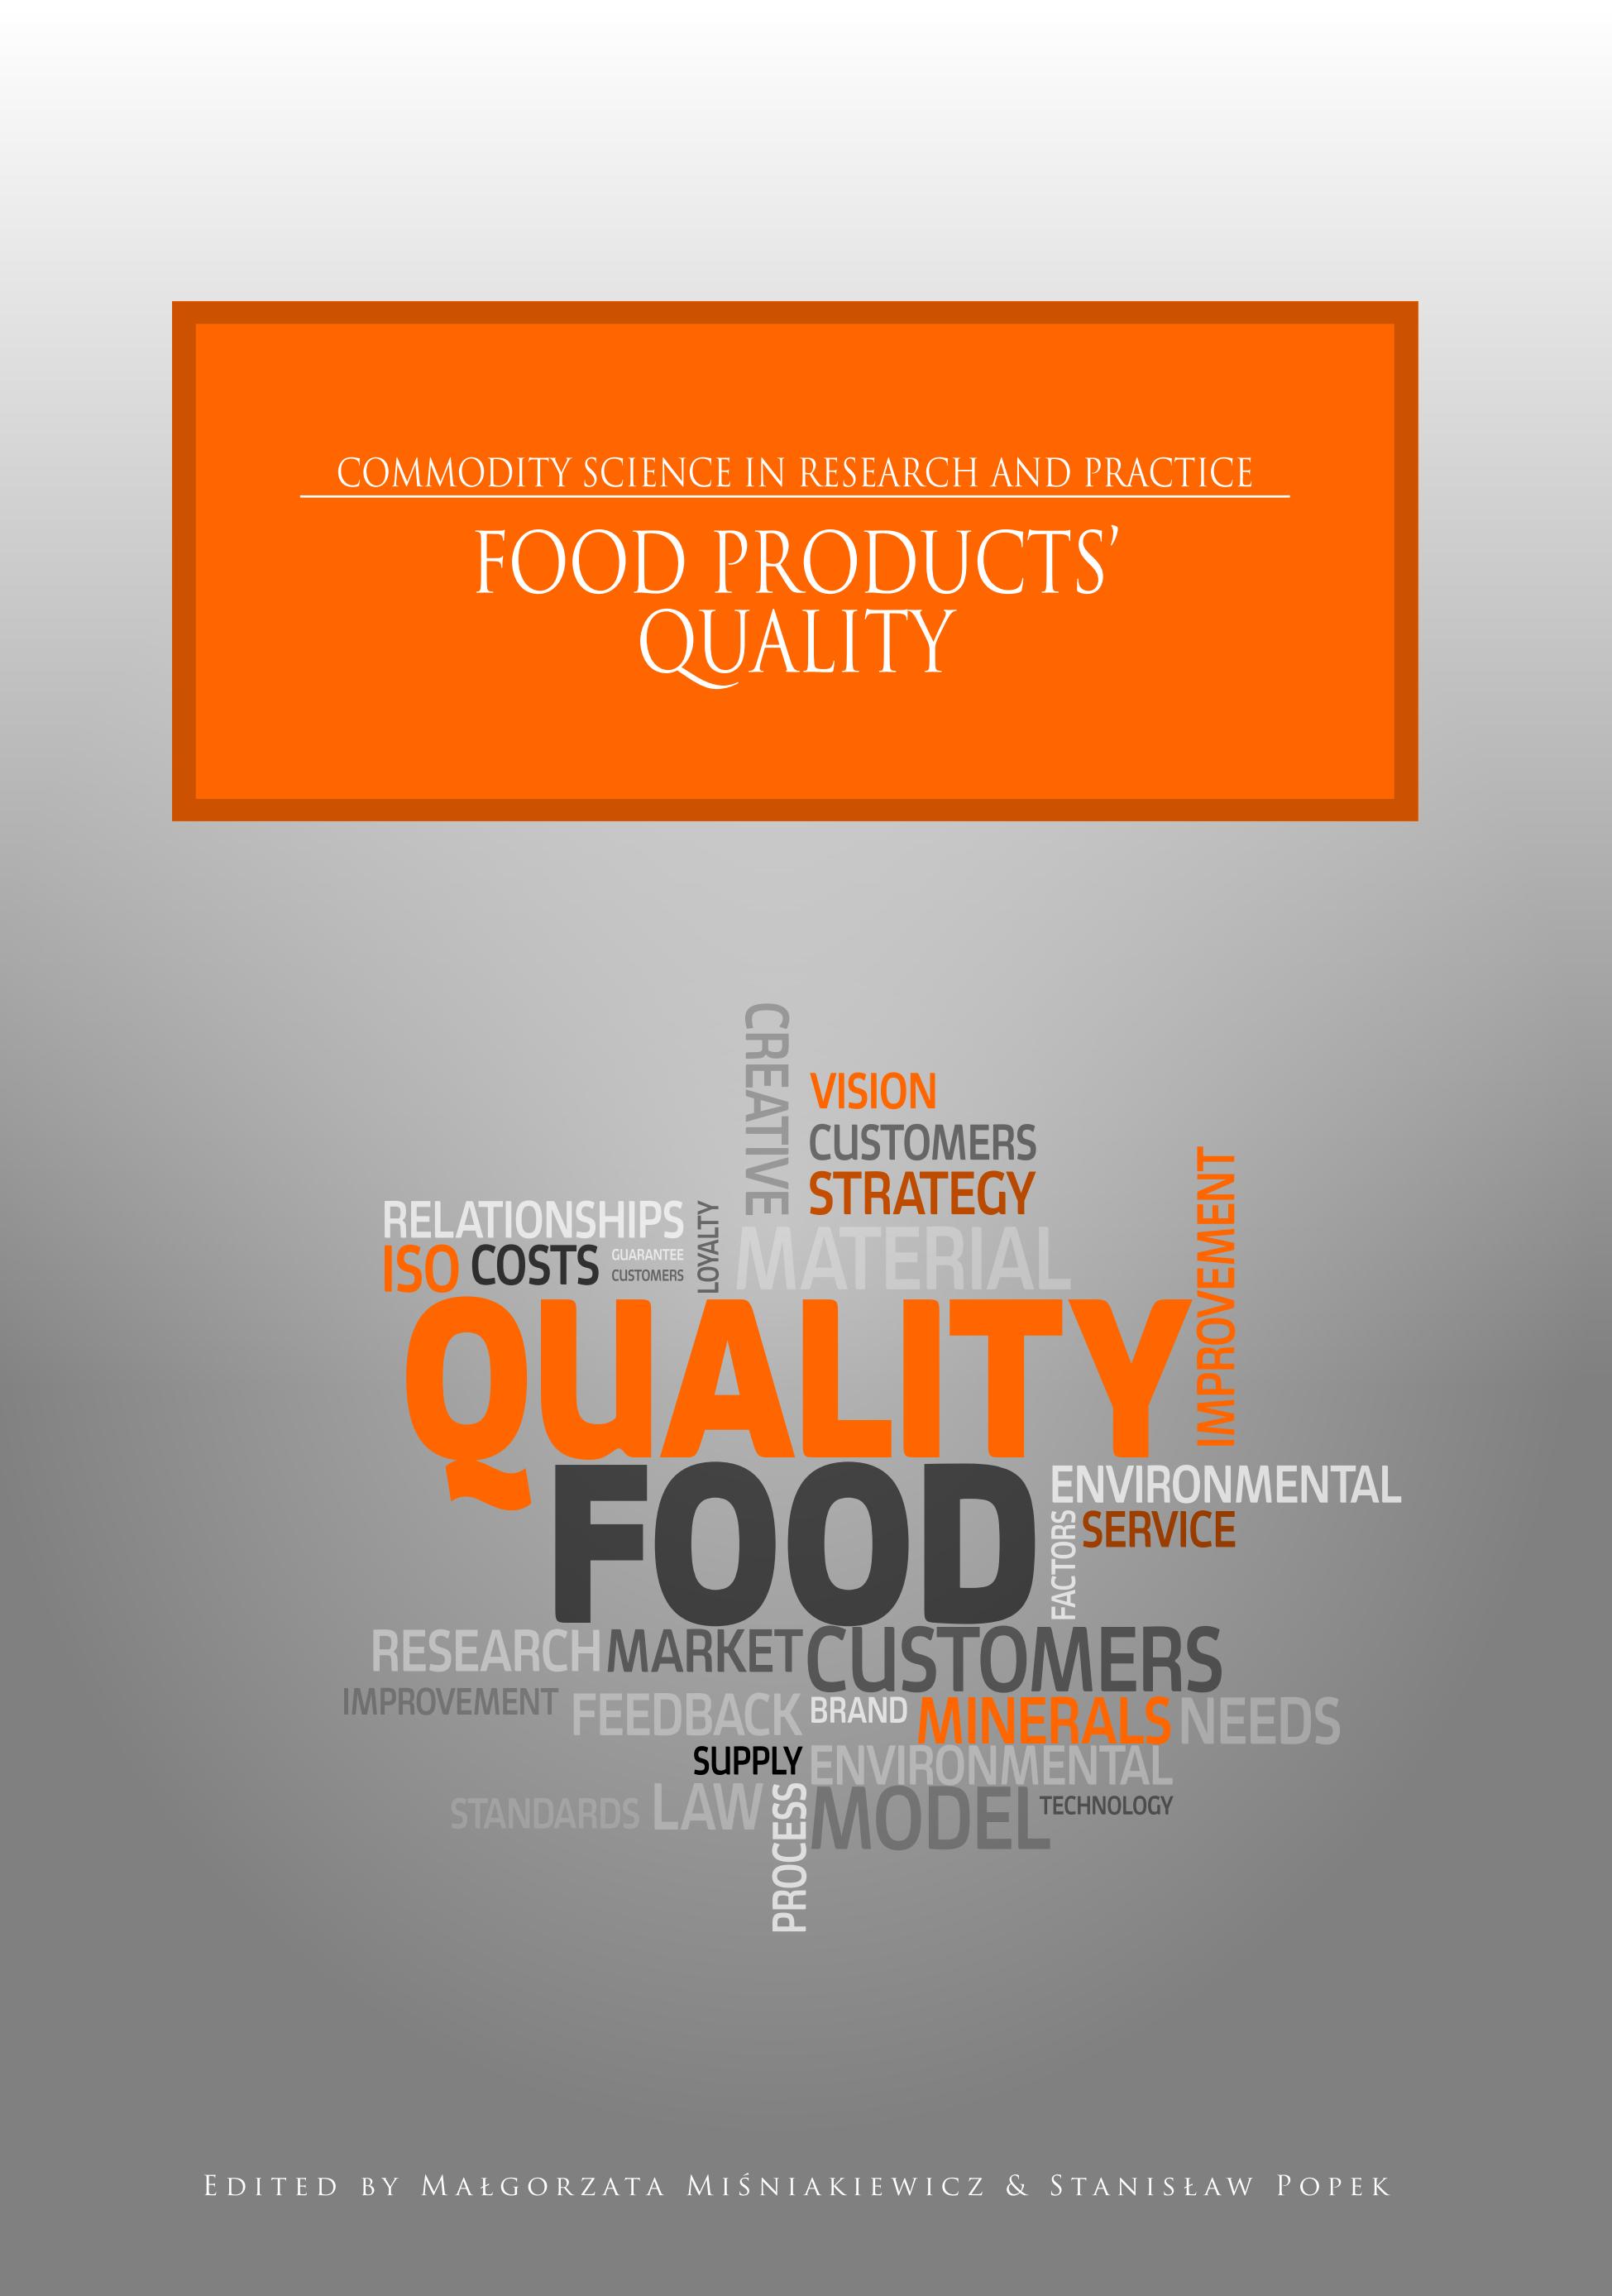 FOOD_PRODUCTS'_QUALITY_ed_by_Misniakiewicz&Popek_01